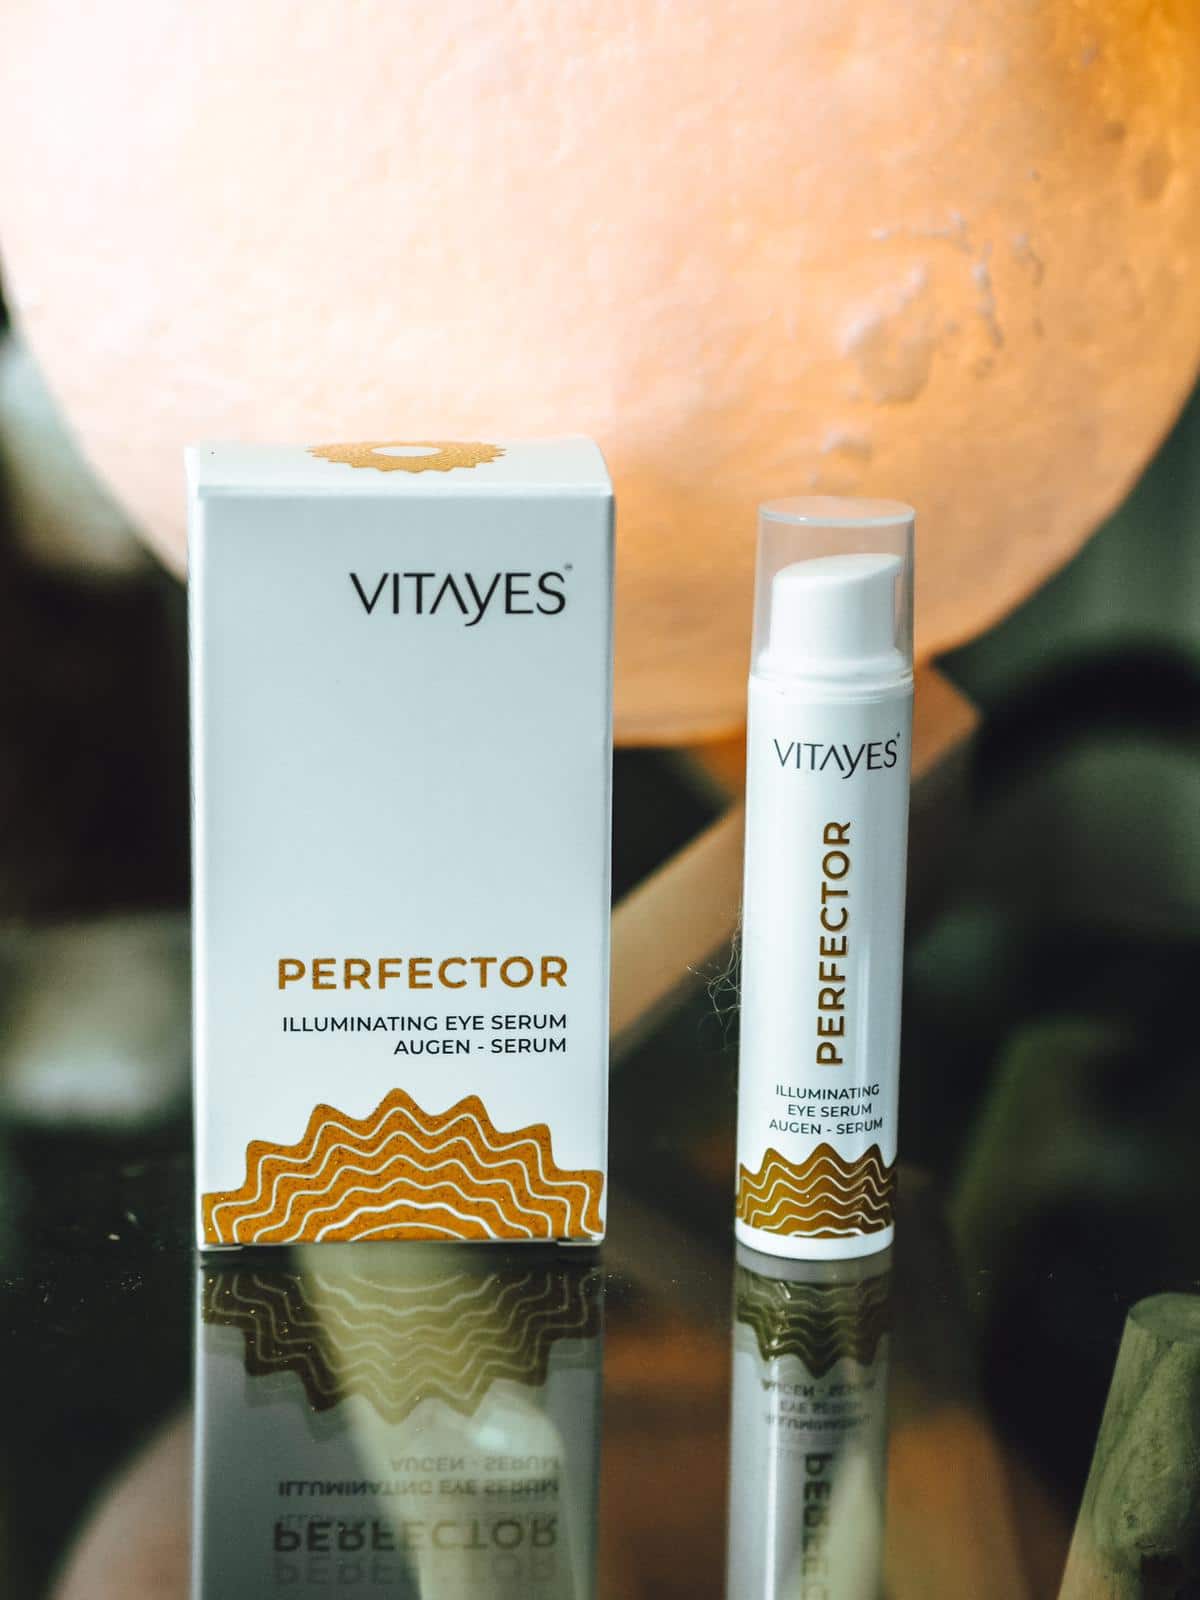 Das effektive Augen Gel aus der Perfector Hautpflegeserie von Vitayes